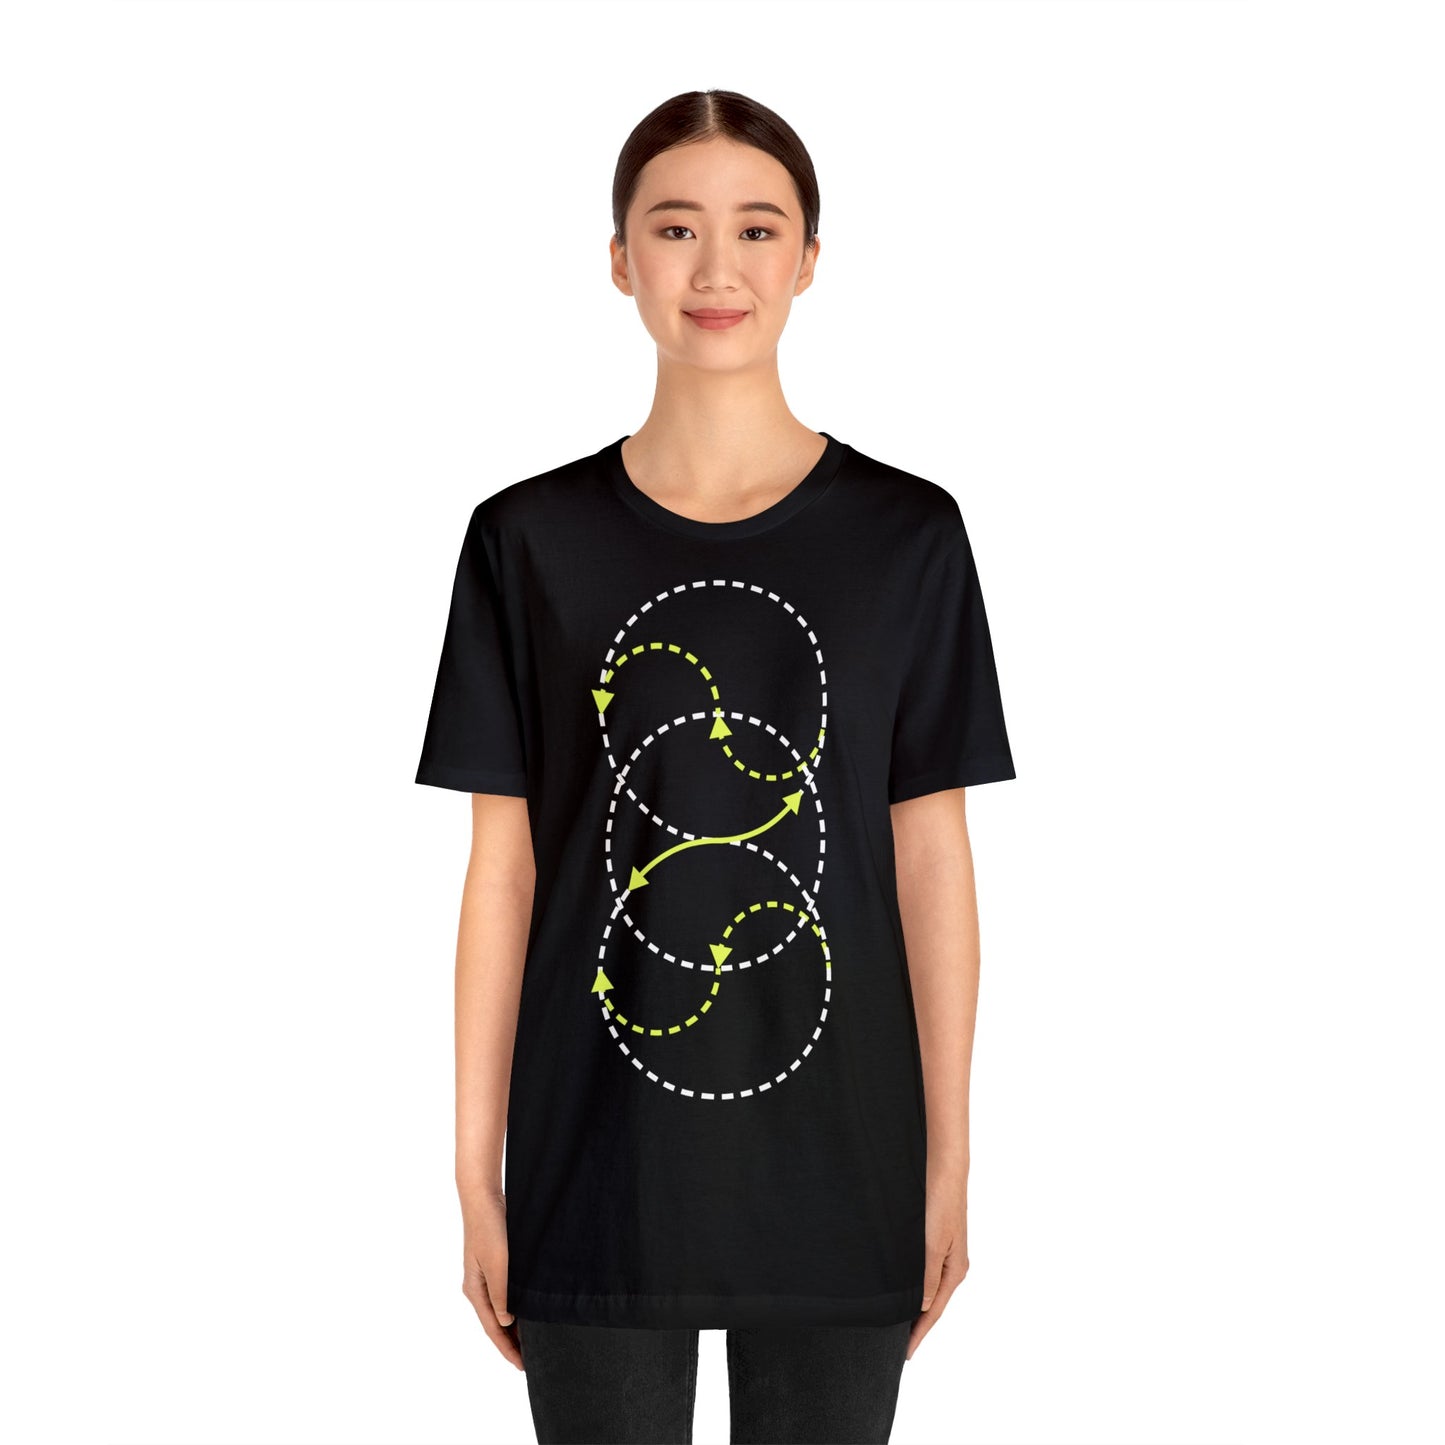 Hufschlagfigur – Unisex T-Shirt